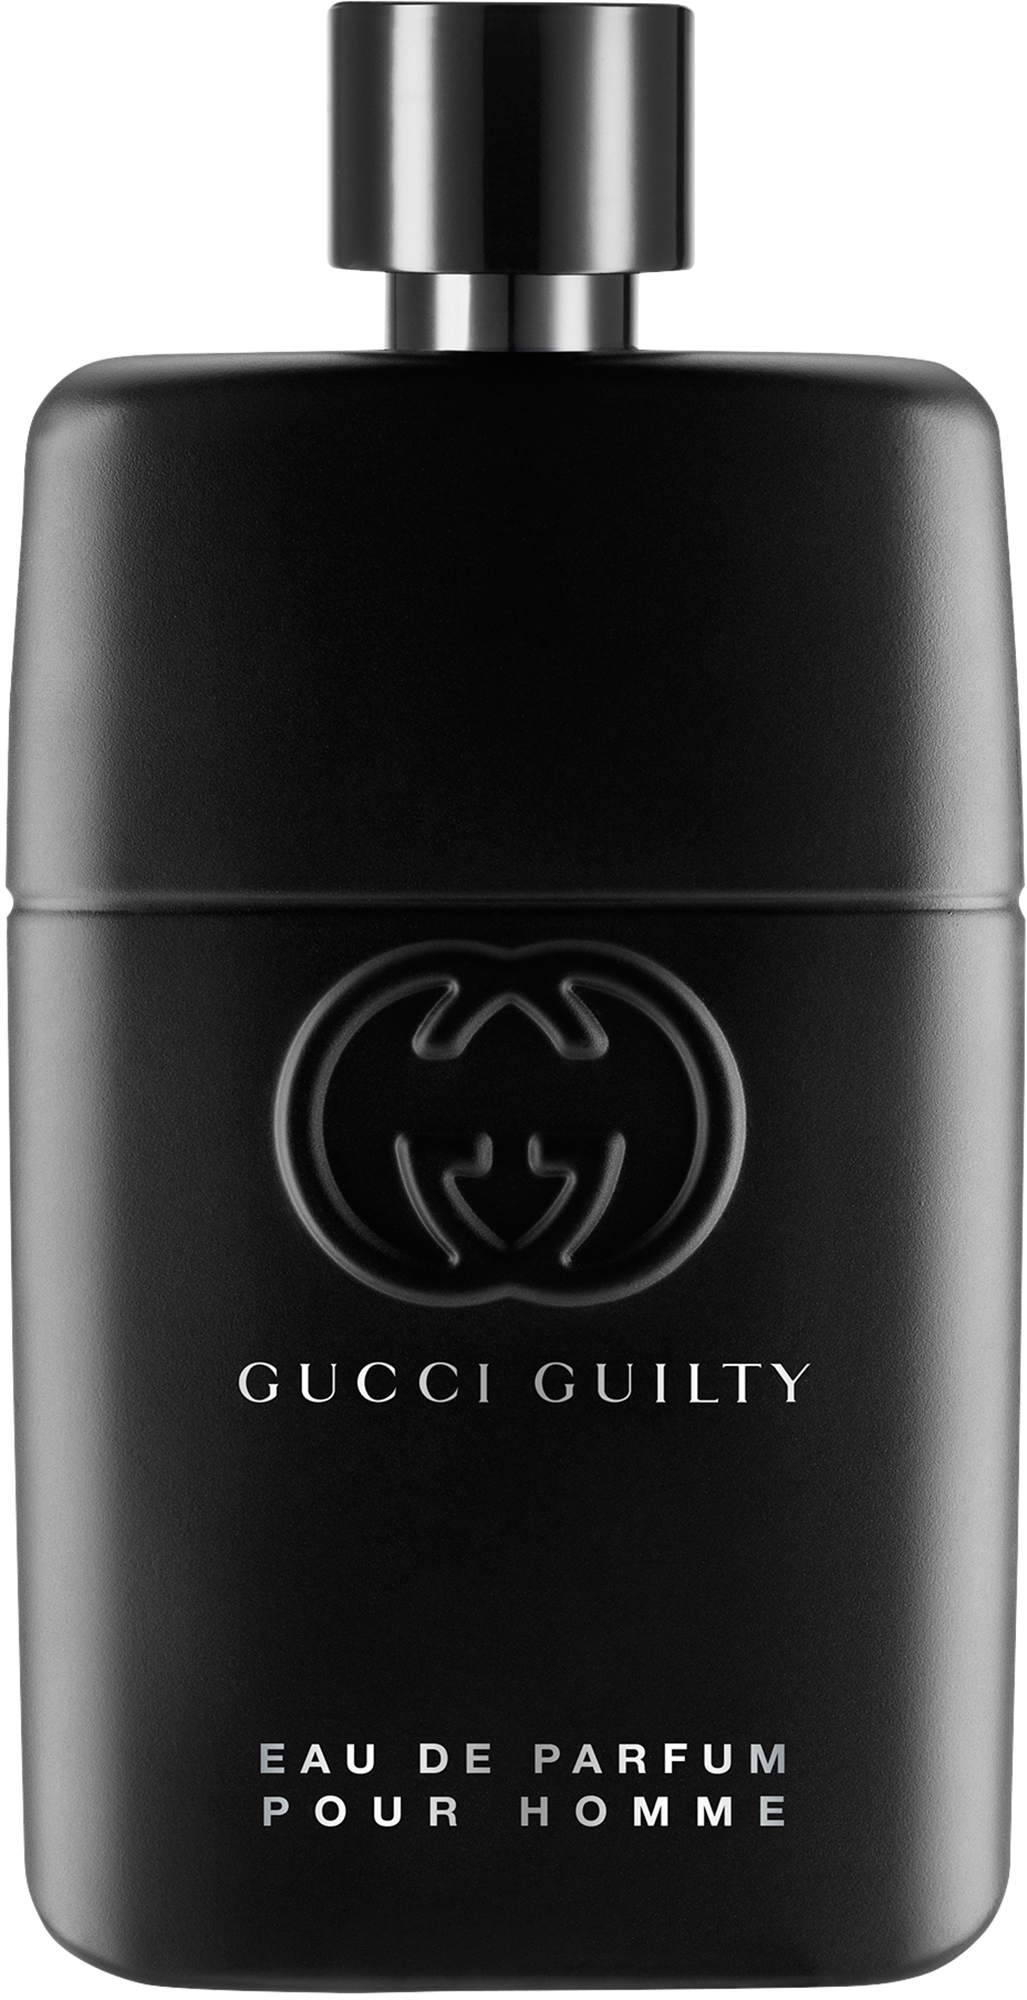 Gucci Guilty Pour Homme Eau 50 Parfum De ml